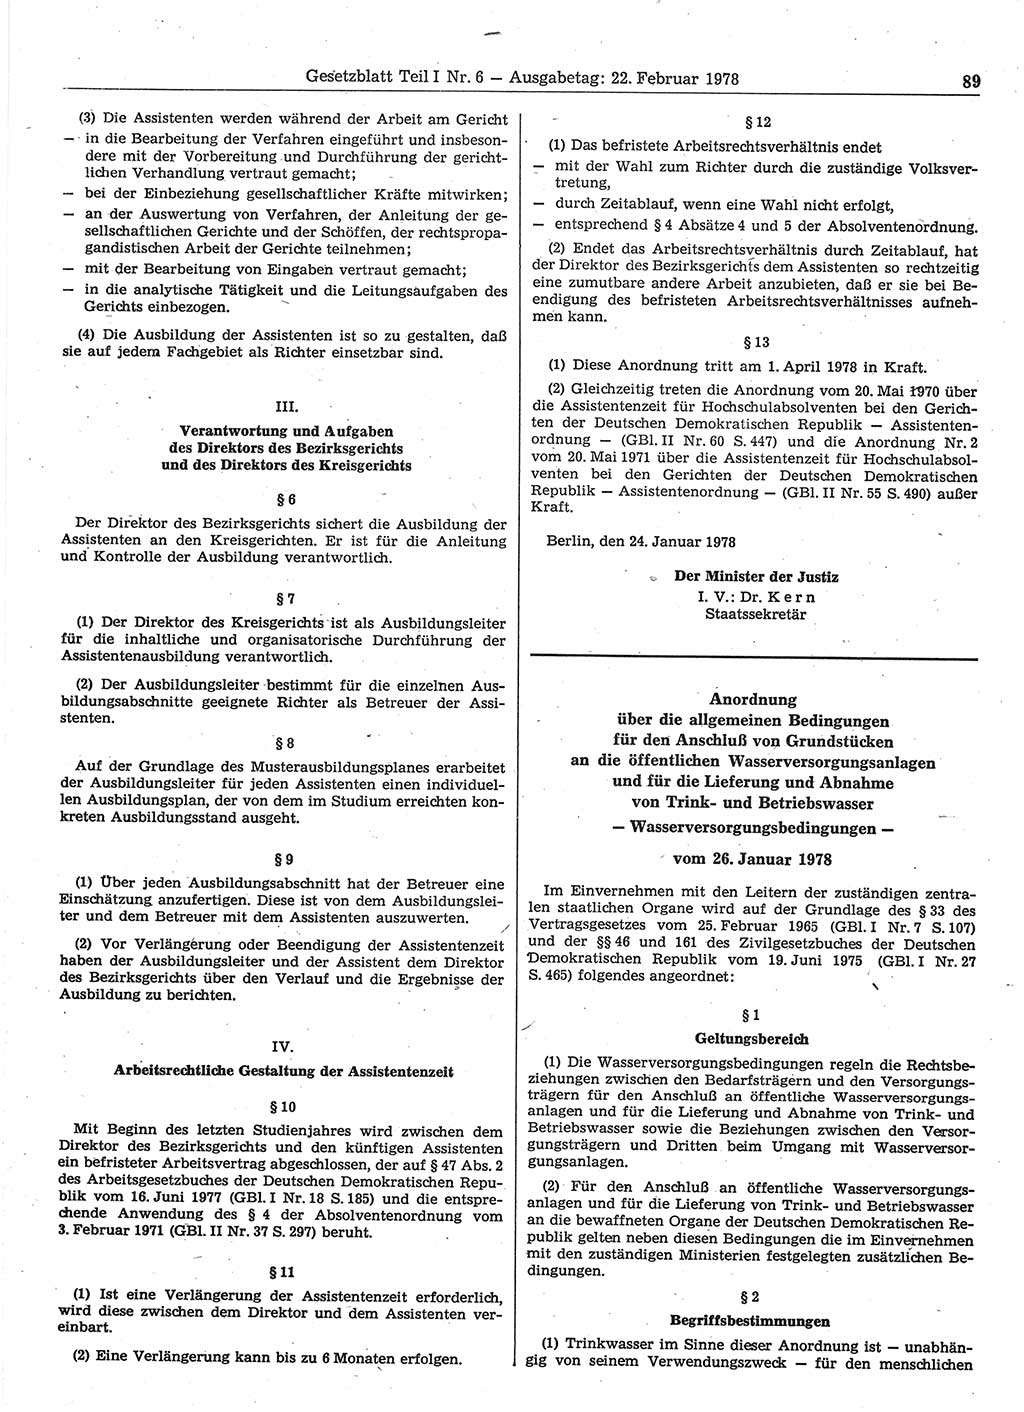 Gesetzblatt (GBl.) der Deutschen Demokratischen Republik (DDR) Teil Ⅰ 1978, Seite 89 (GBl. DDR Ⅰ 1978, S. 89)